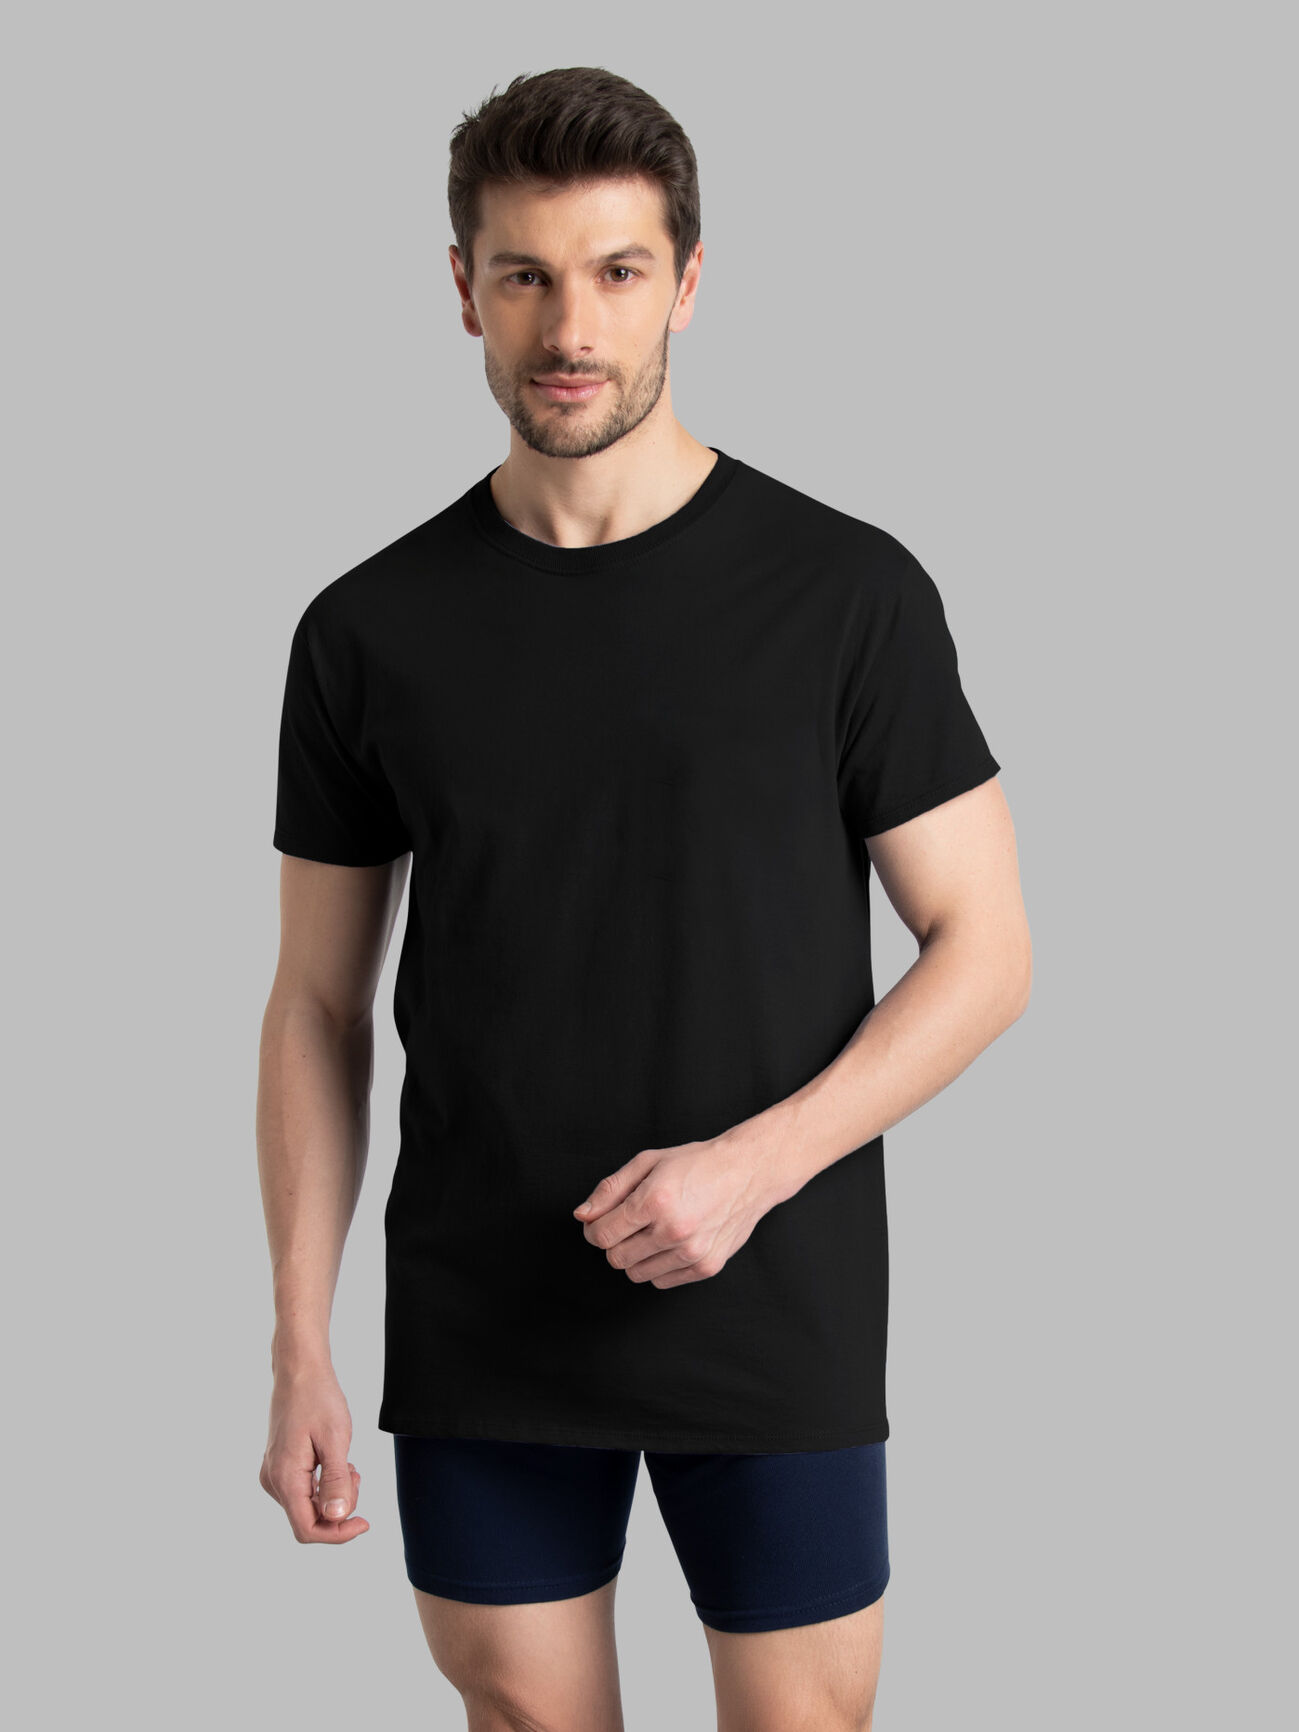 Men's 100% Cotton Big & Tall Shirts